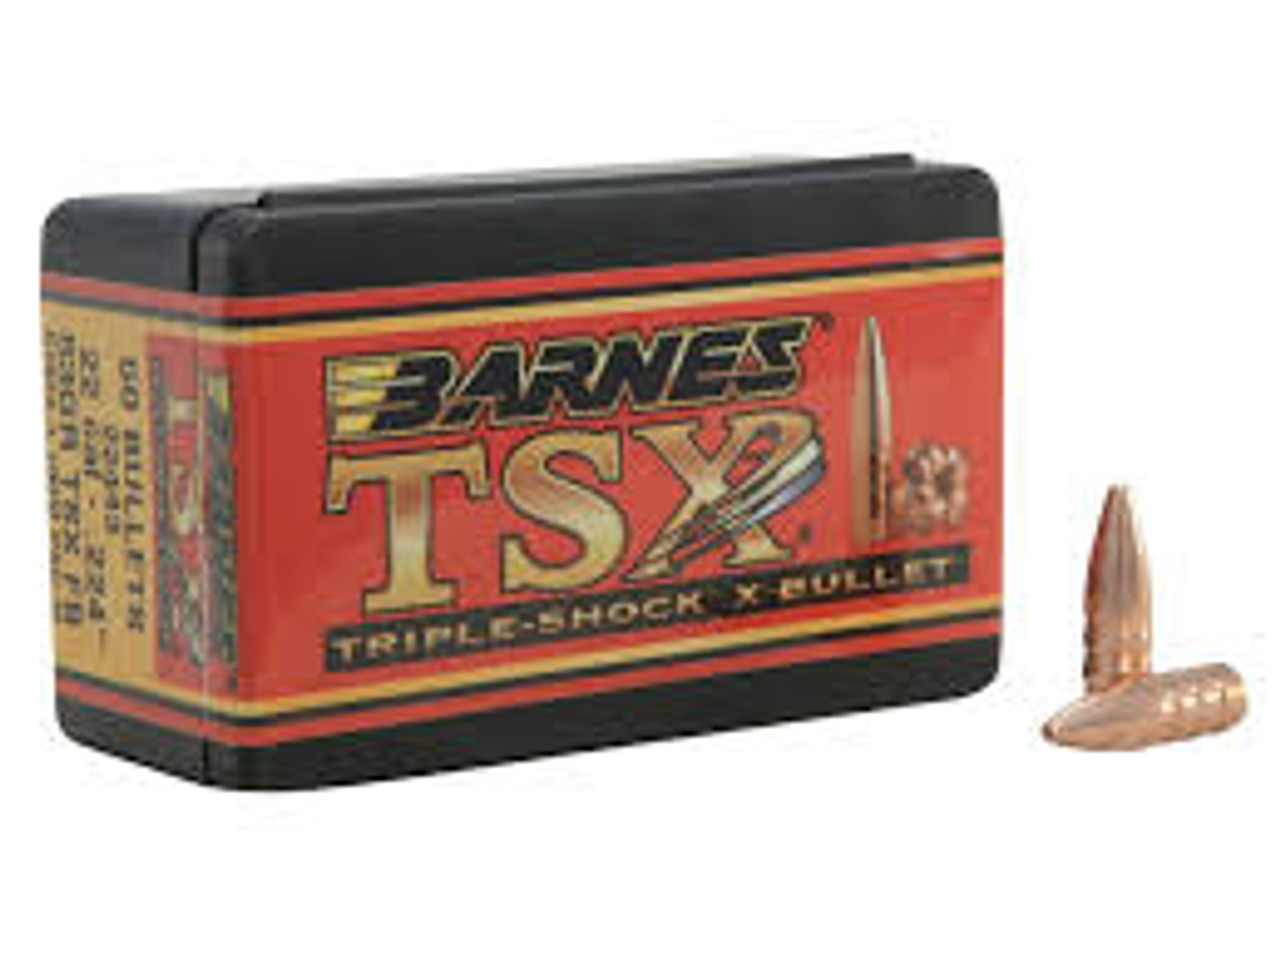 Barnes TSX Rifle Bullets